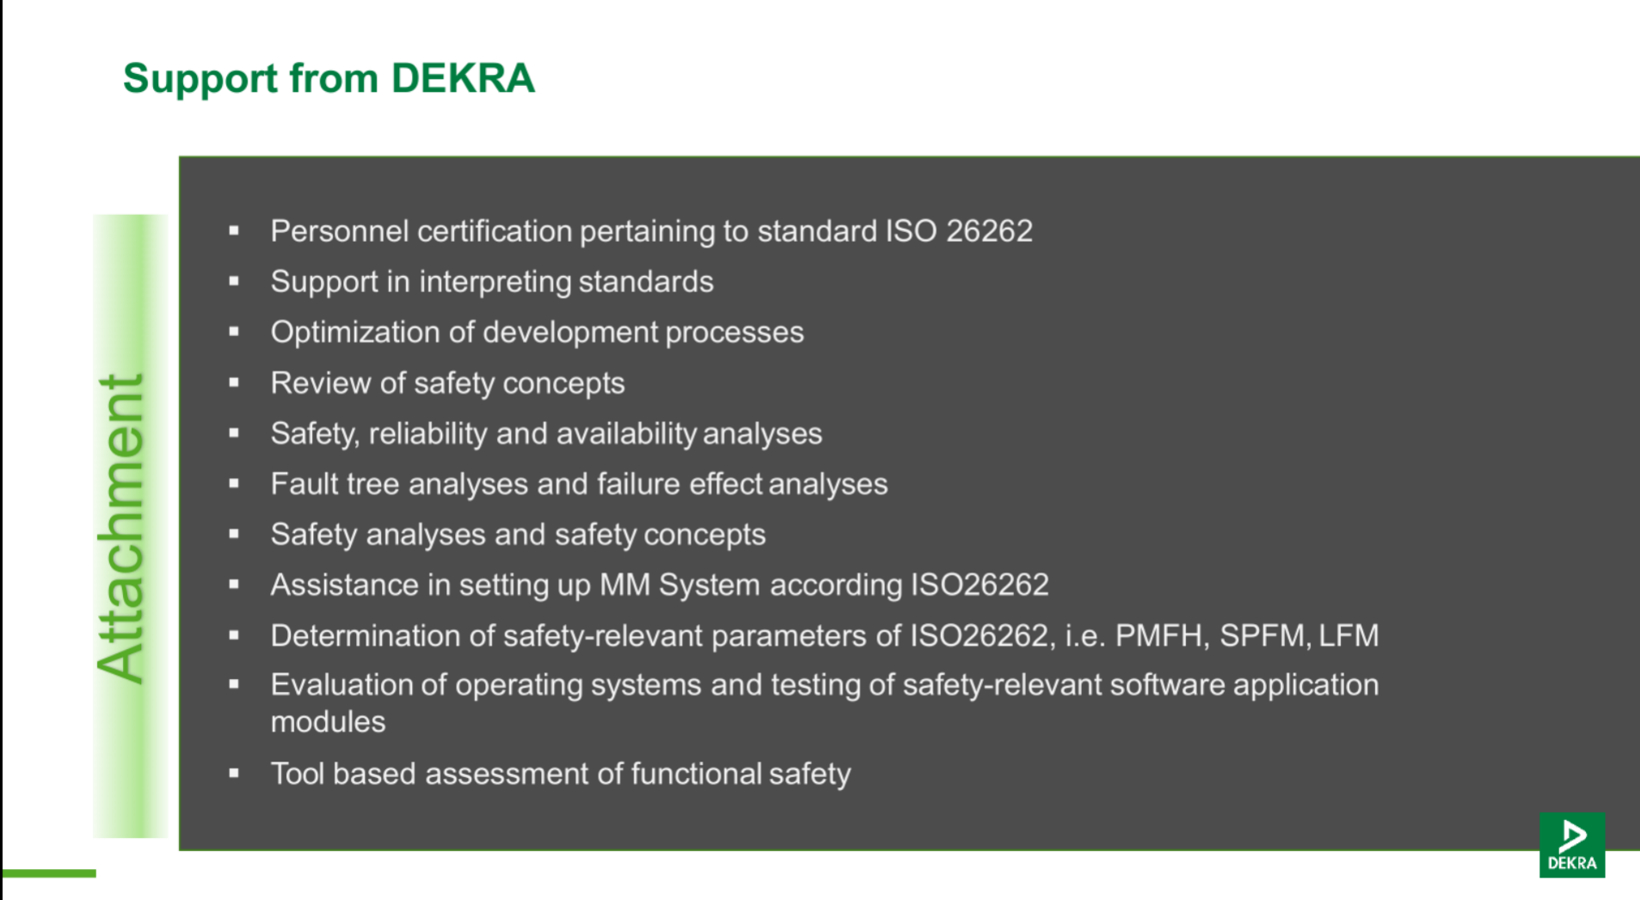 车辆测试认证专家 DEKRA德凯提供功能安全解决方案